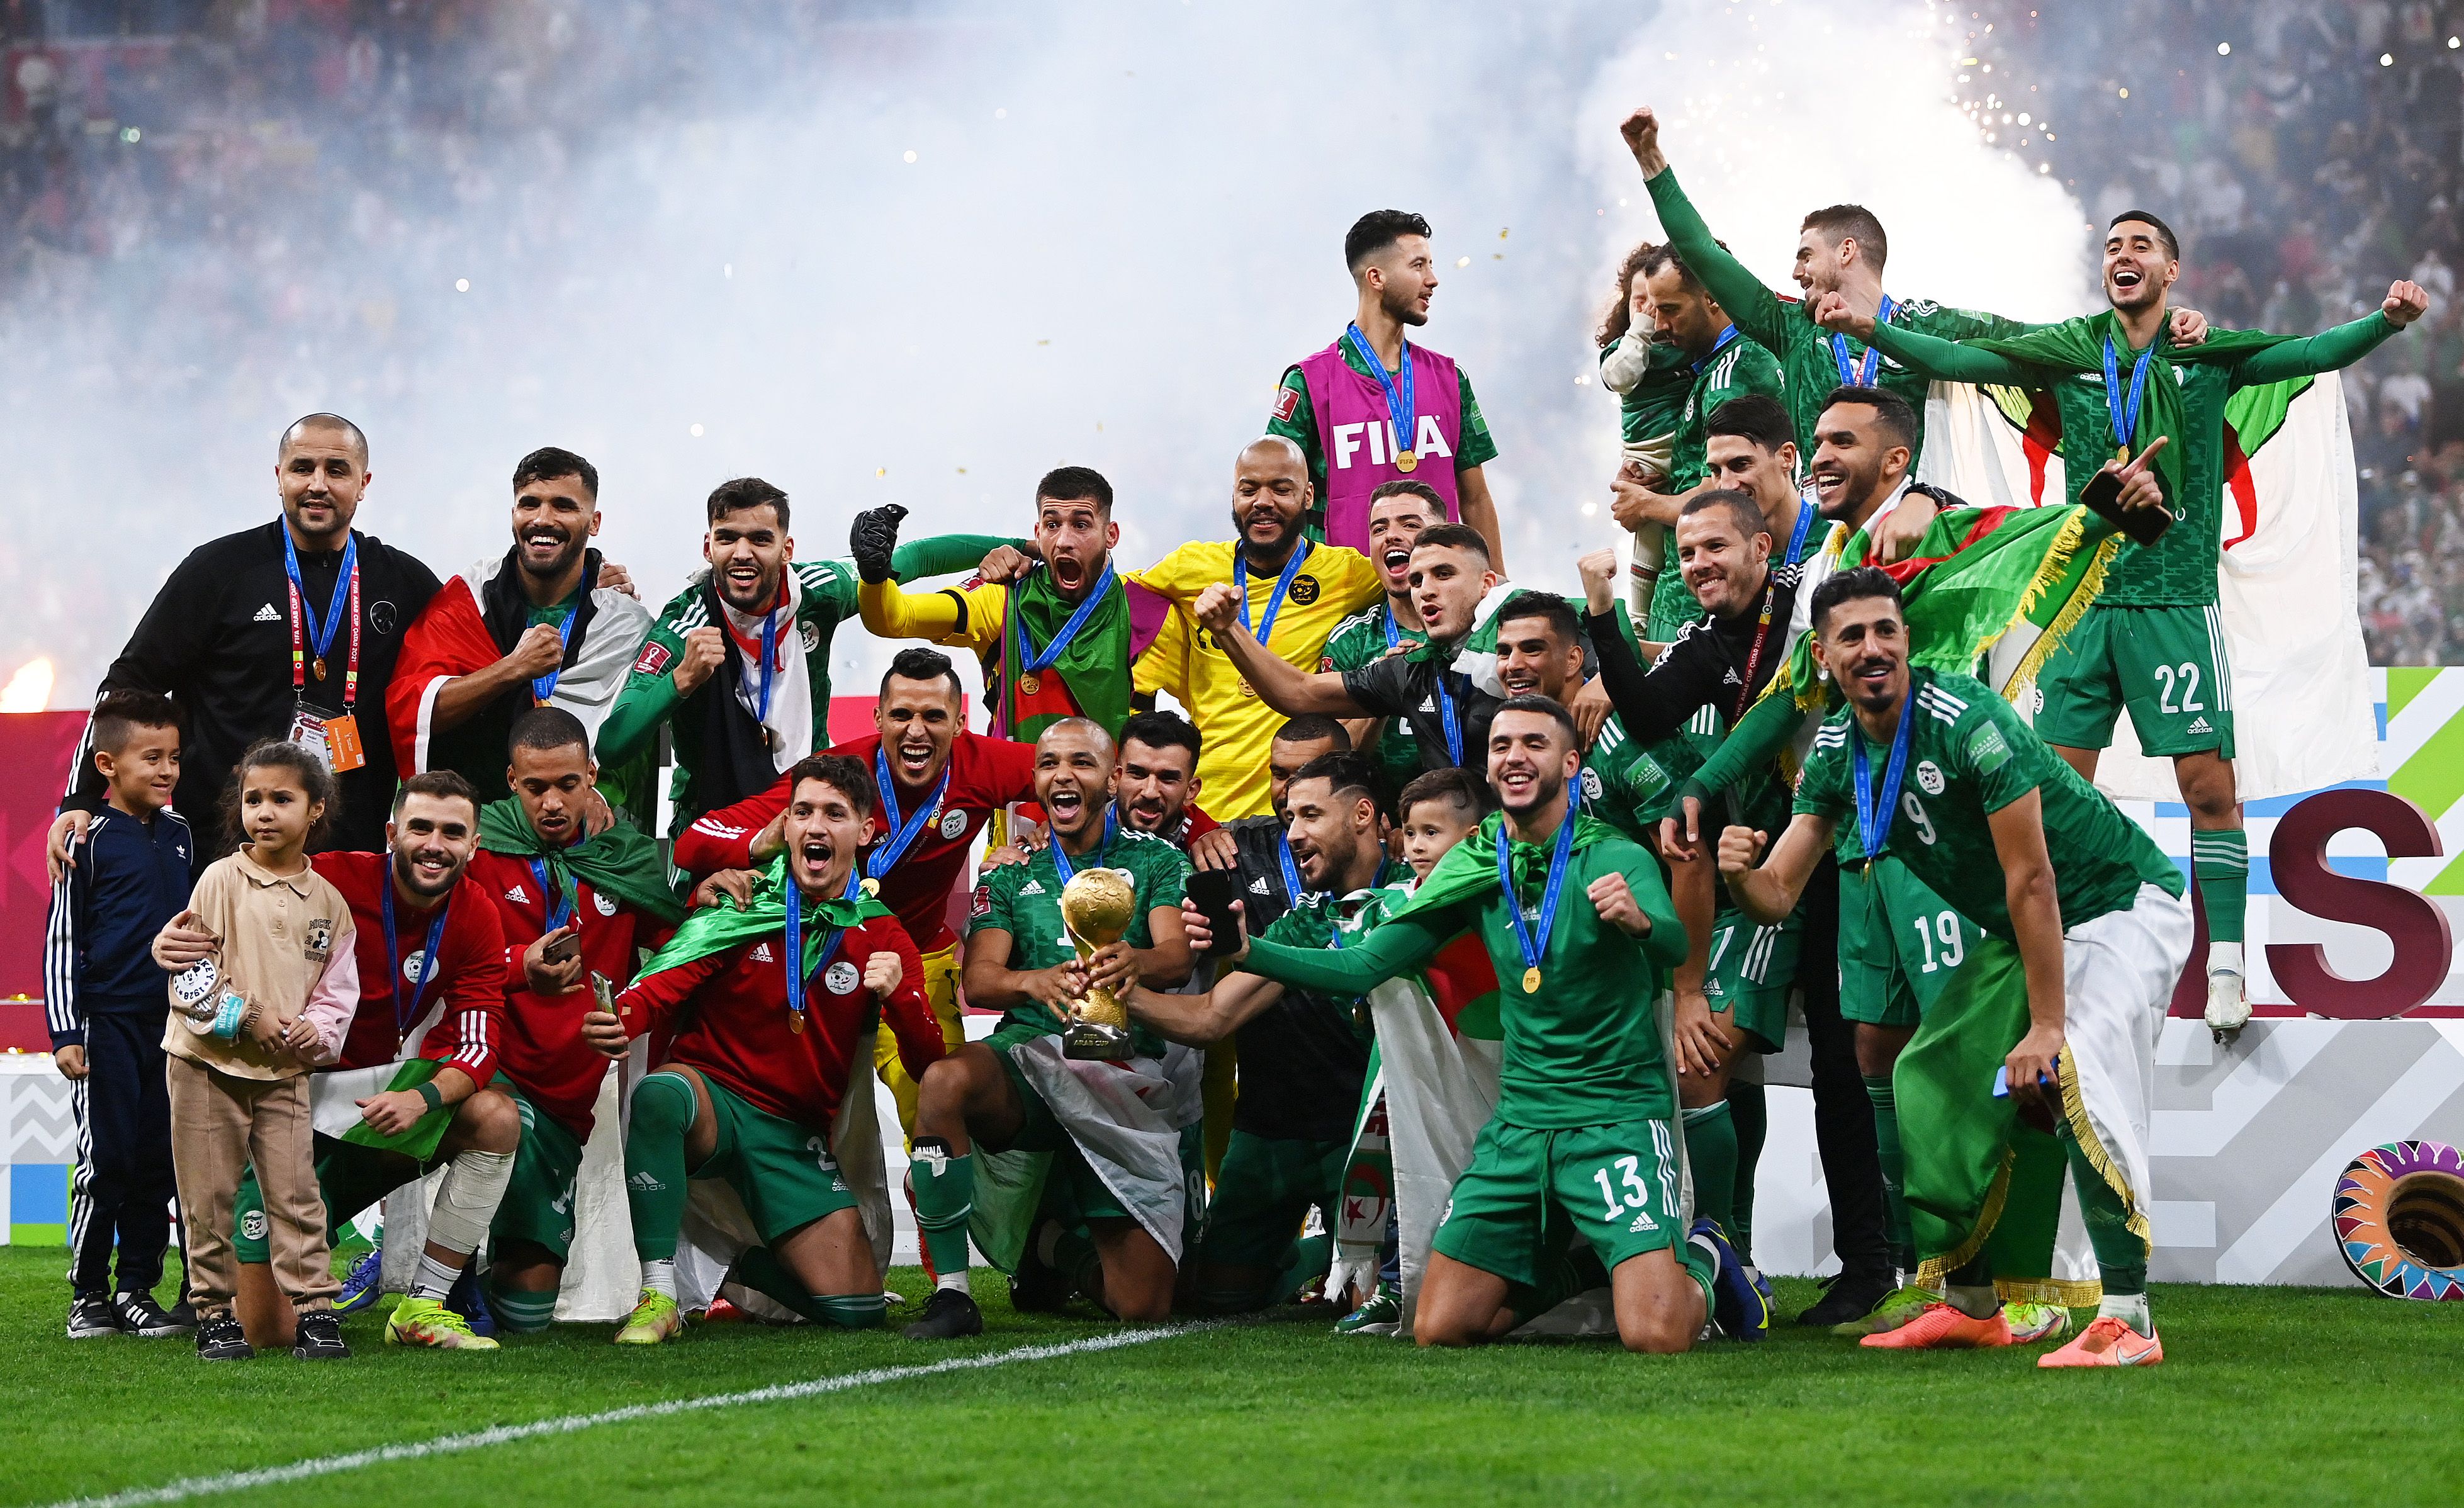 Algeria won the Arab Cup in their run